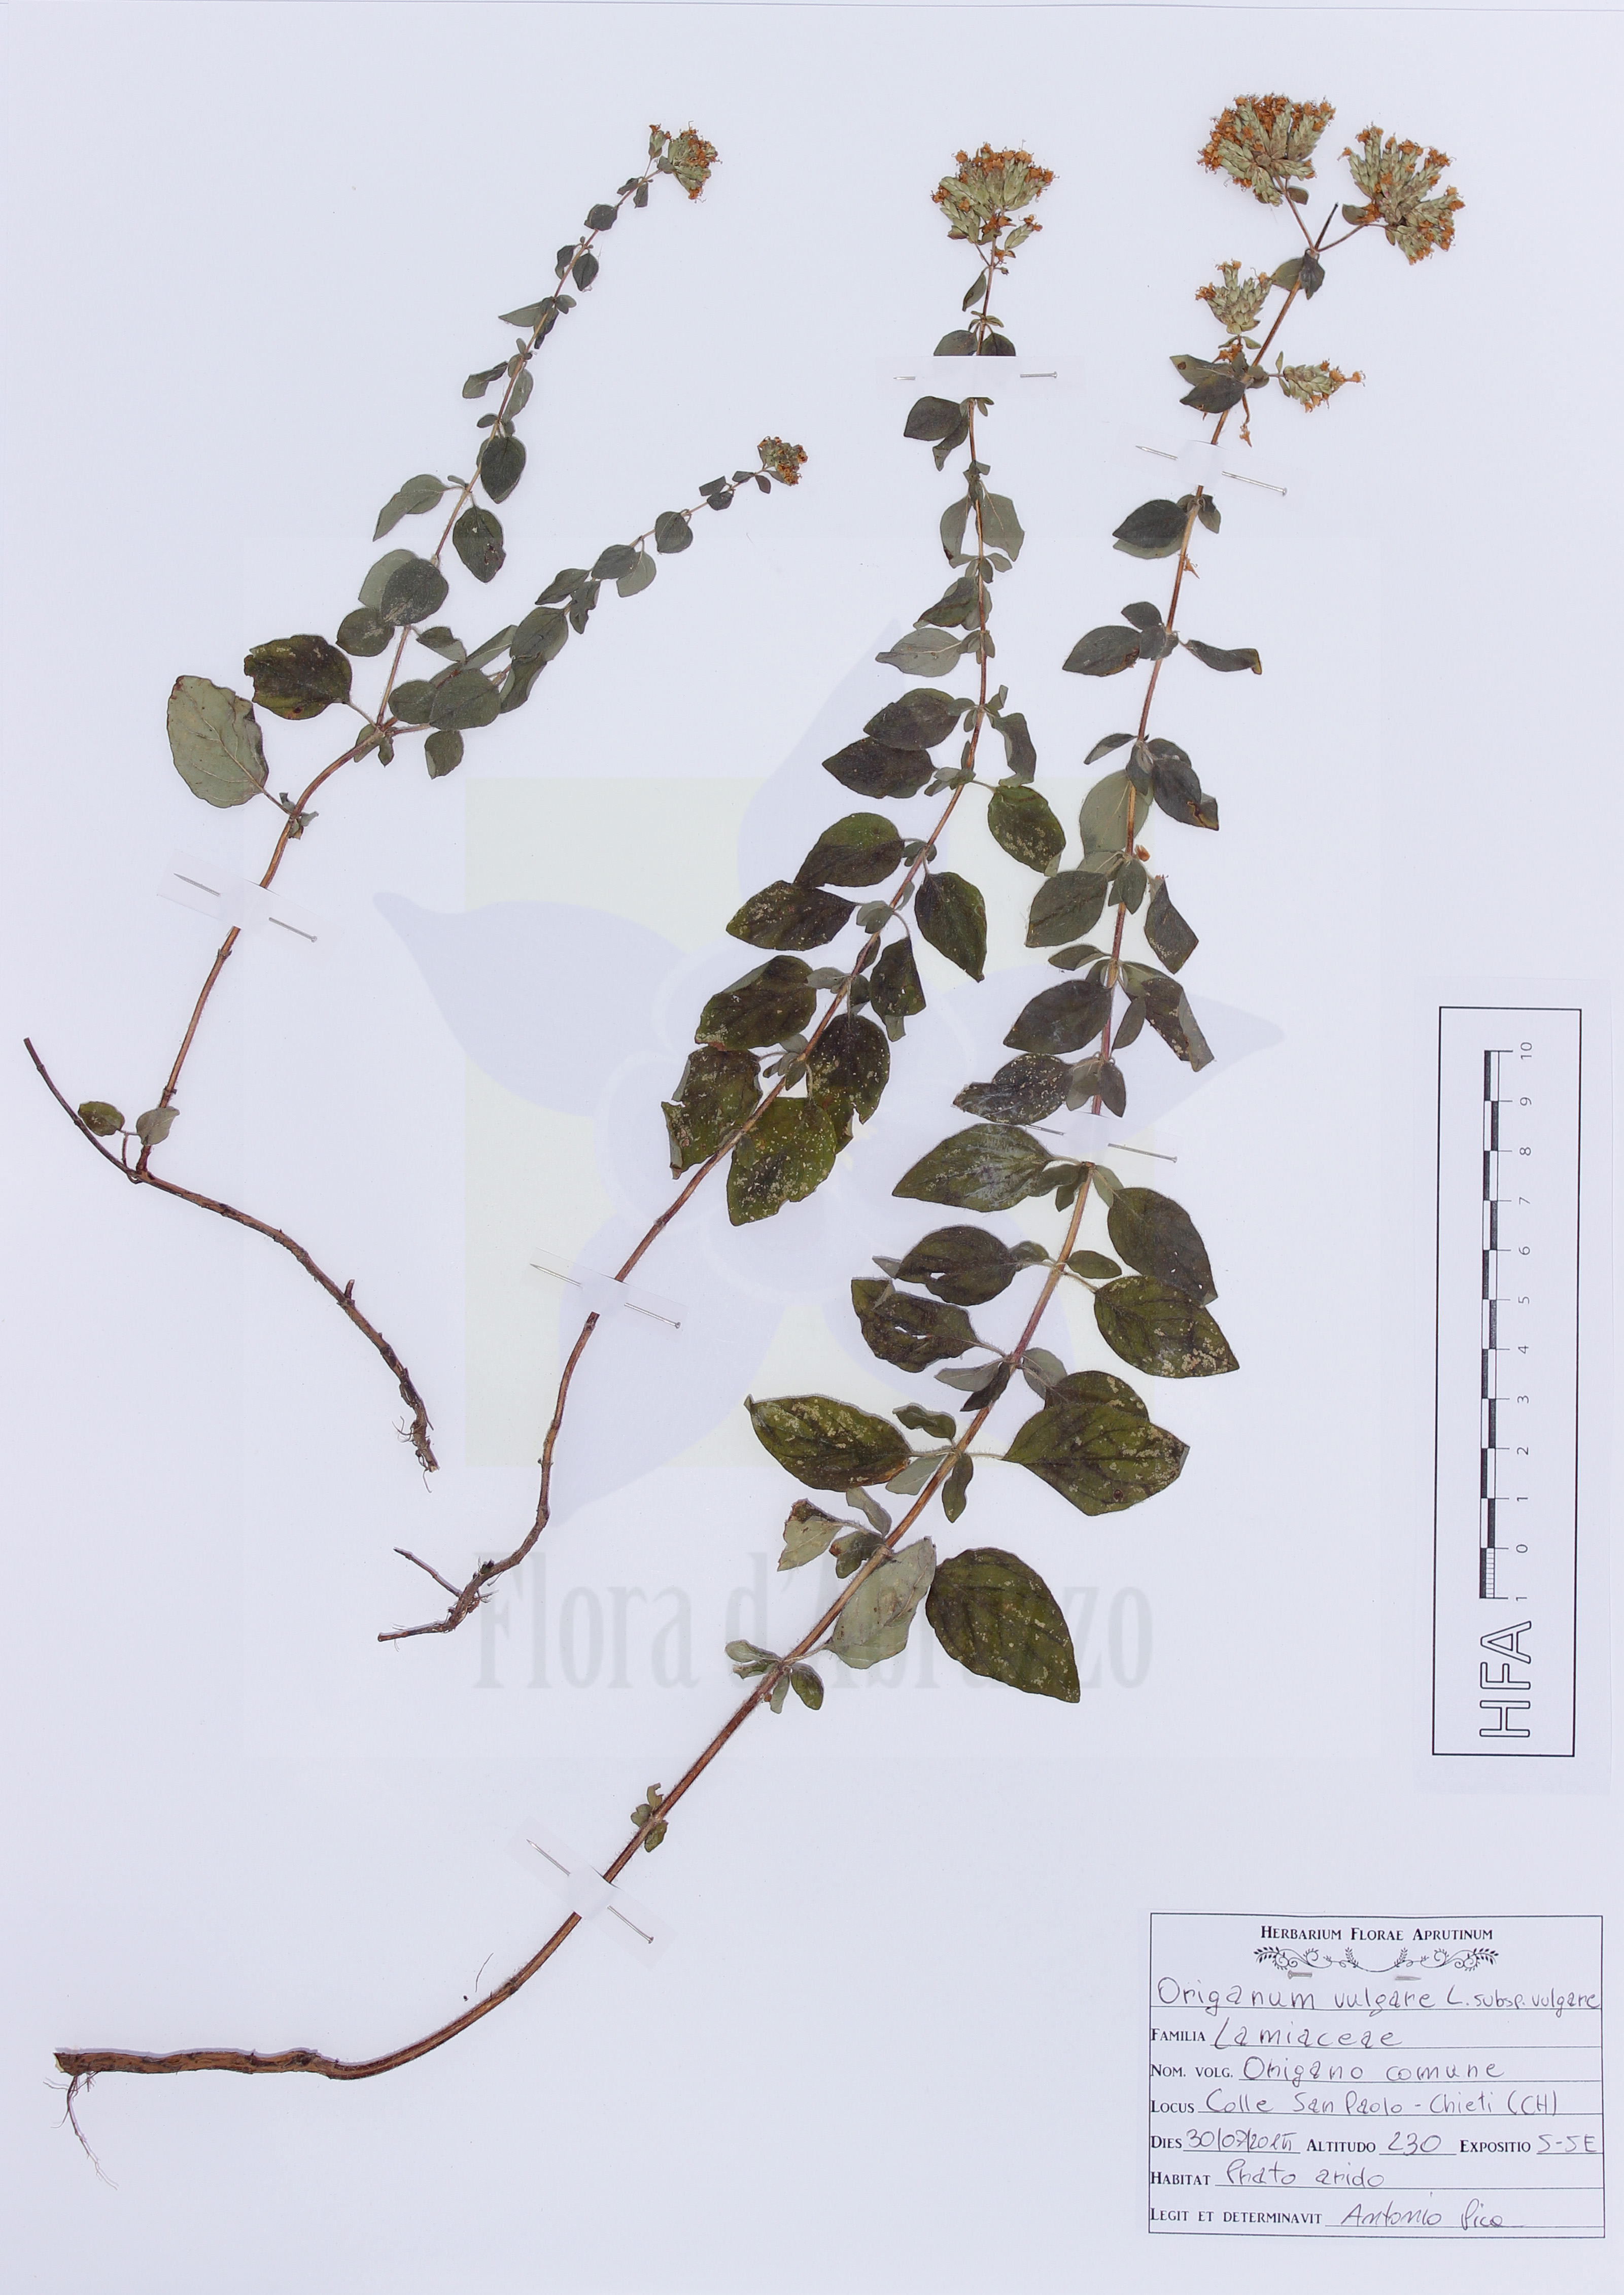 Origanum vulgare L. subsp. vulgare